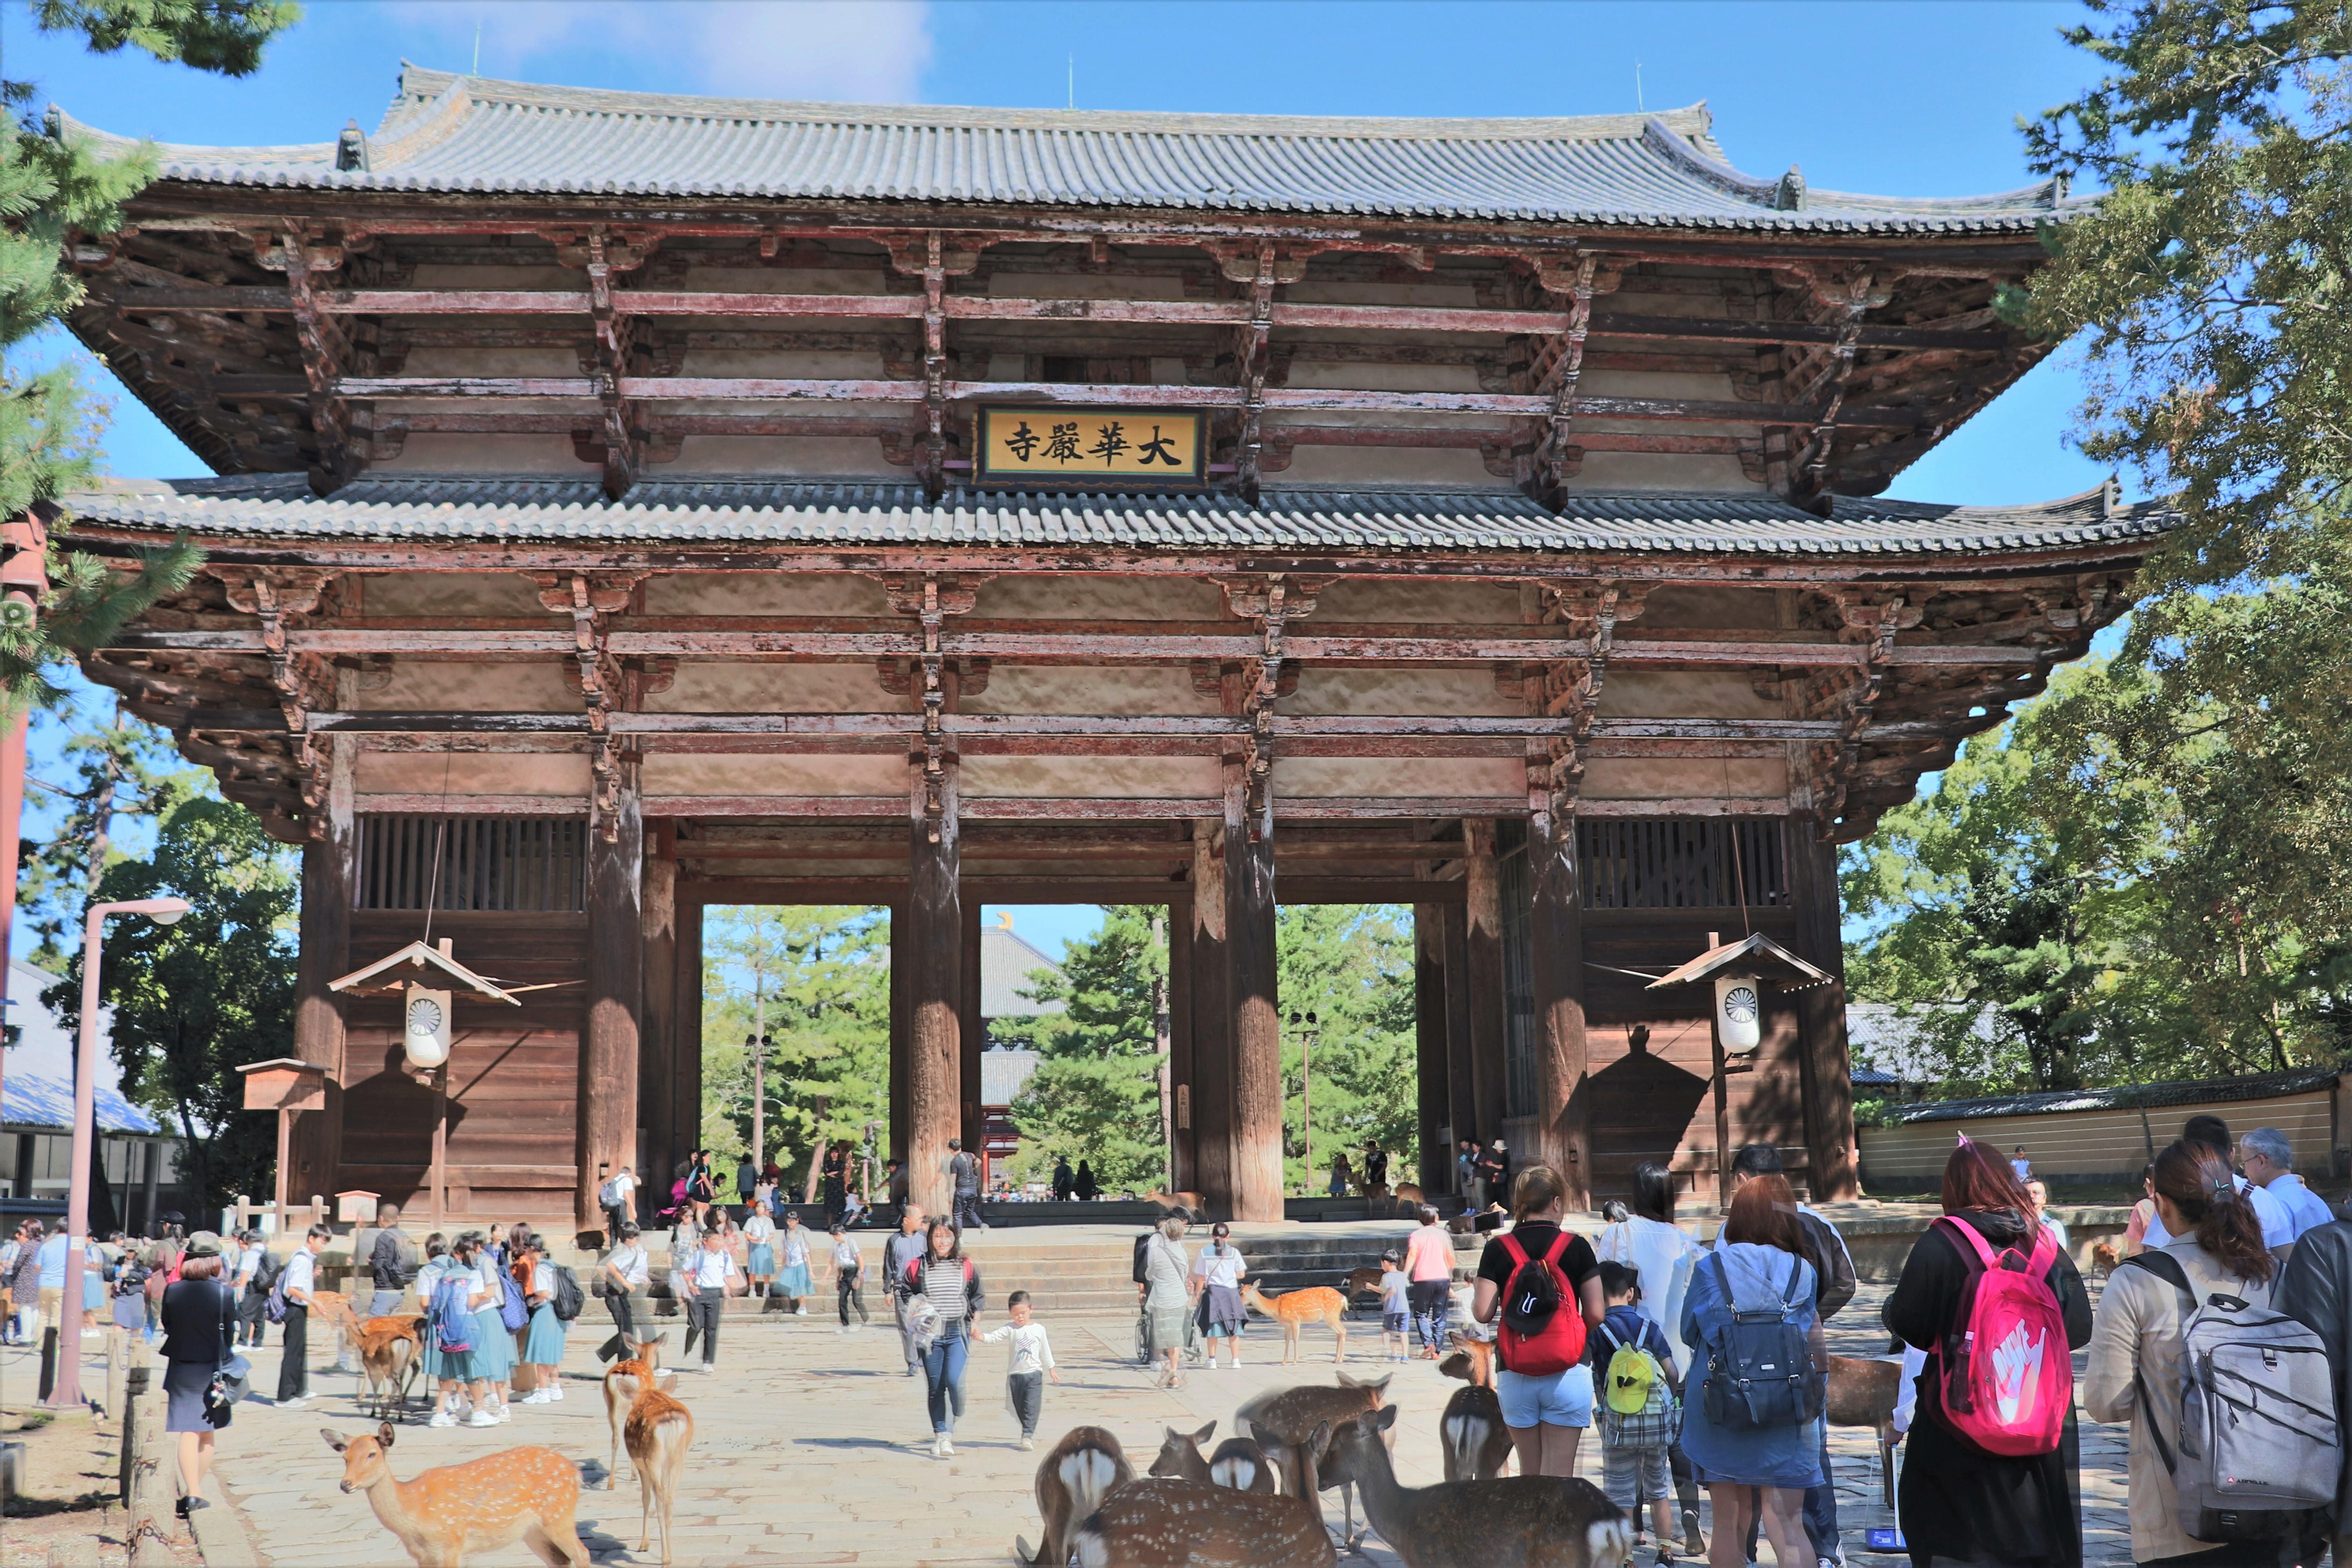 Nadaimon gate of todaiji temple in Nara